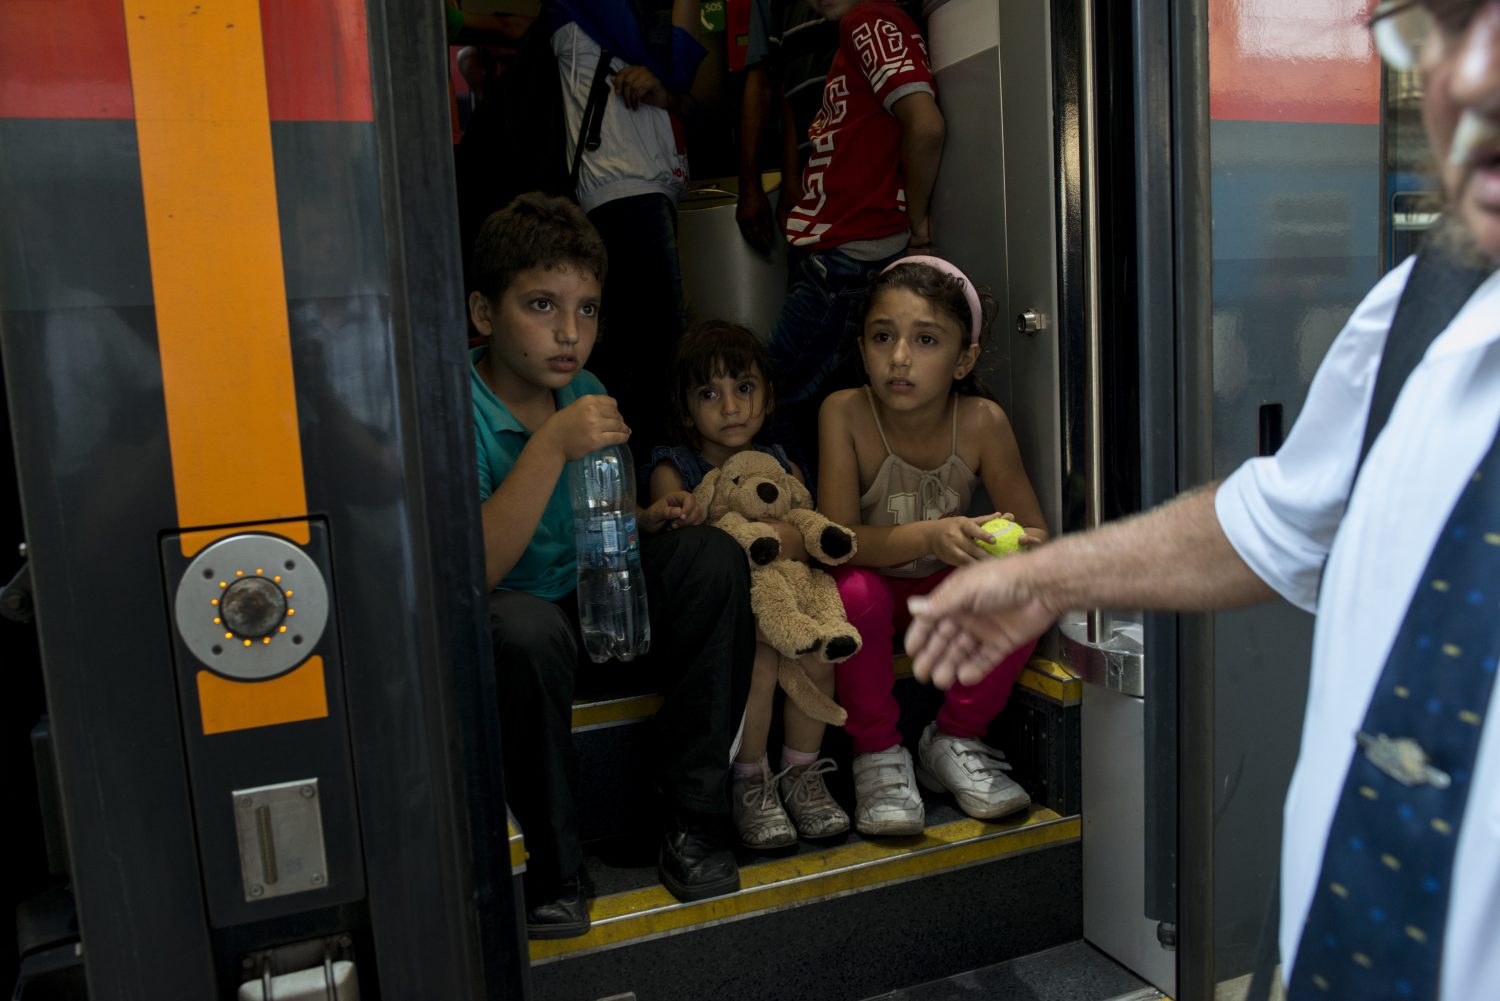 Menekültek egy Münchenbe tartó vonaton a Keleti Pályaudvaron 2015. augusztus 31-én - fotó: Bea Bar Kallos / Izraelinfo